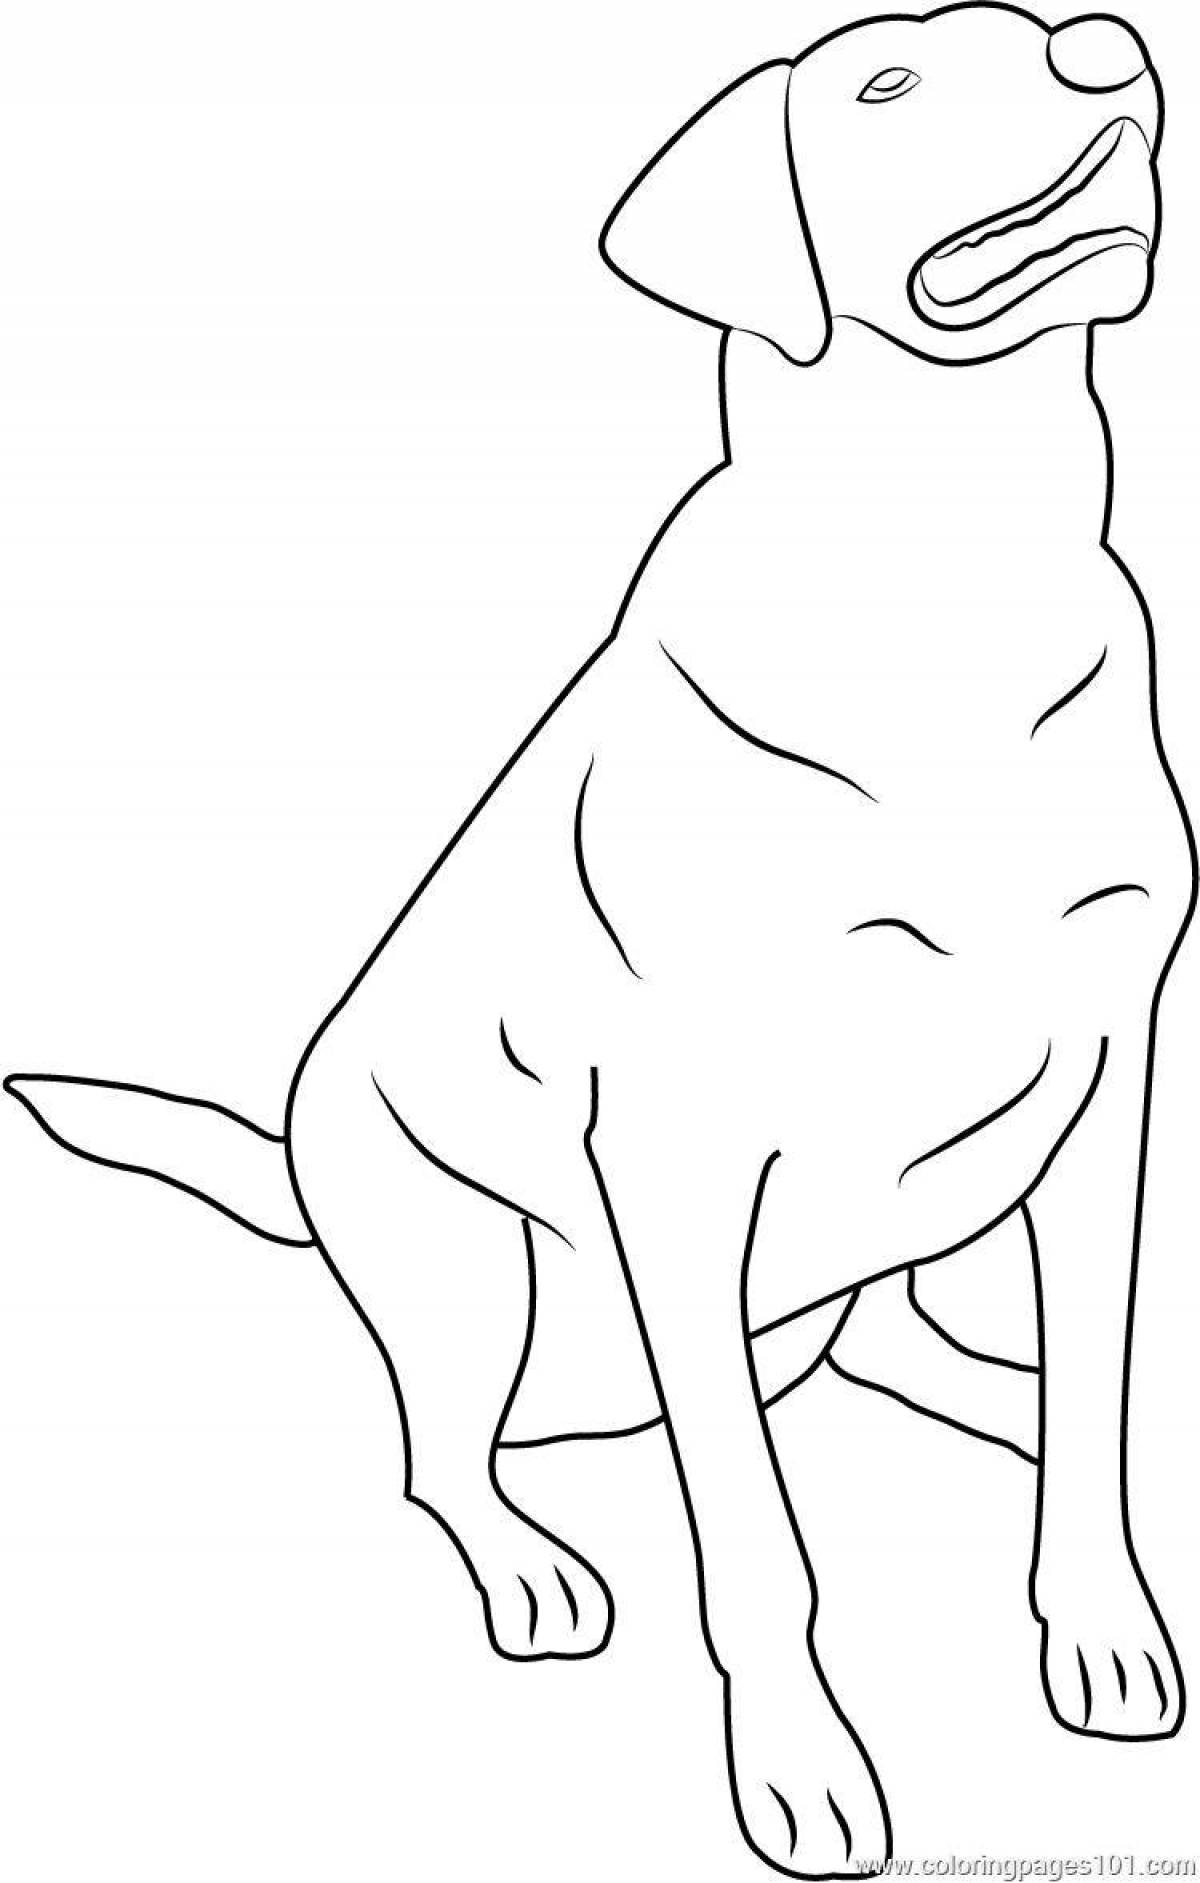 Cute labrador coloring page